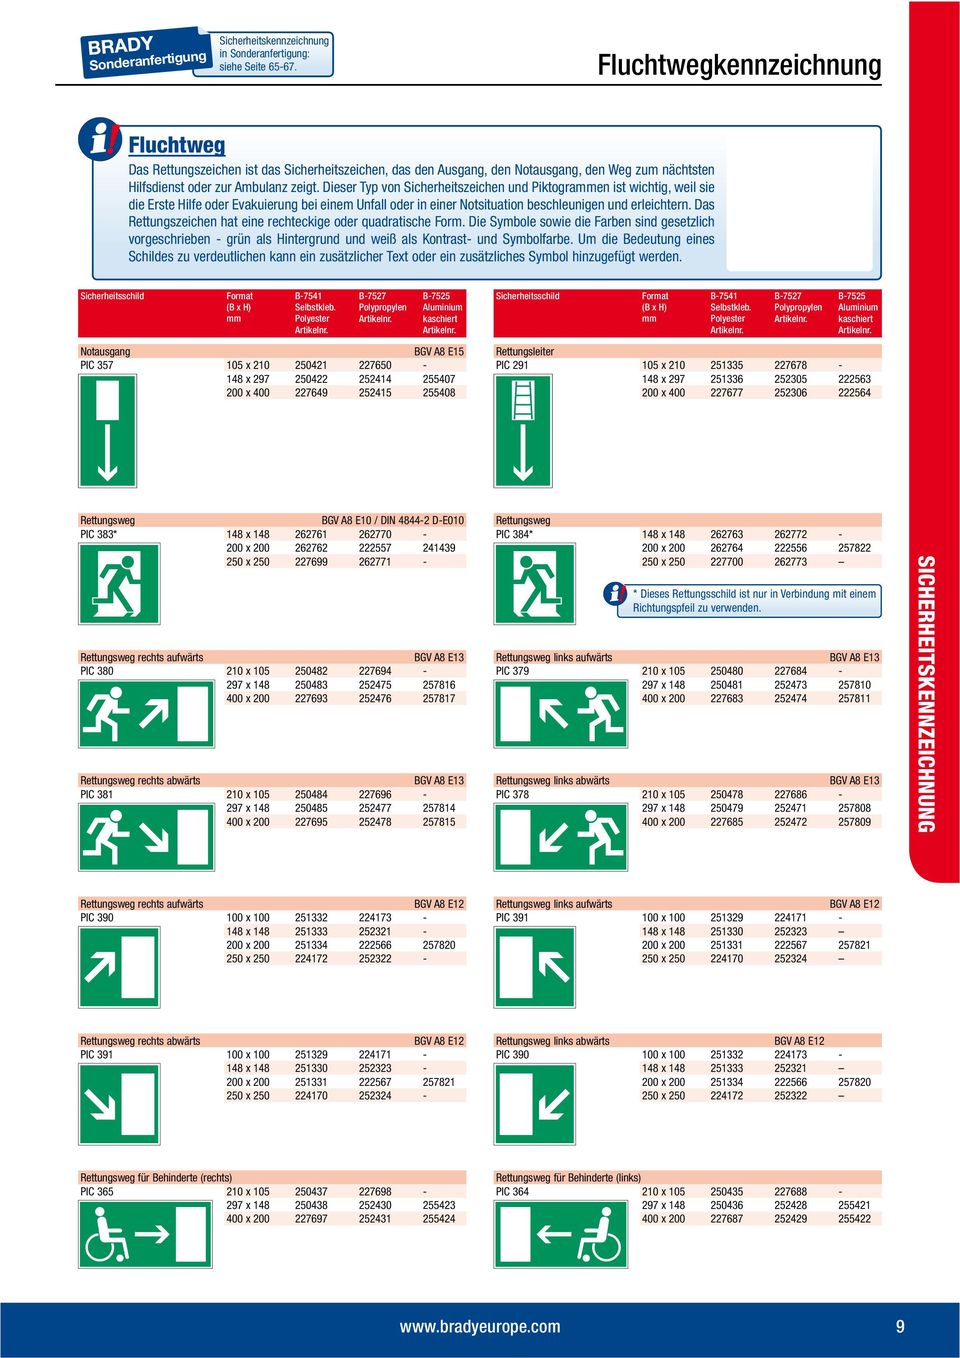 Dieser Typ von Sicherheitszeichen und Piktogrammen ist wichtig, weil sie die Erste Hilfe oder Evakuierung bei einem Unfall oder in einer Notsituation beschleunigen und erleichtern.